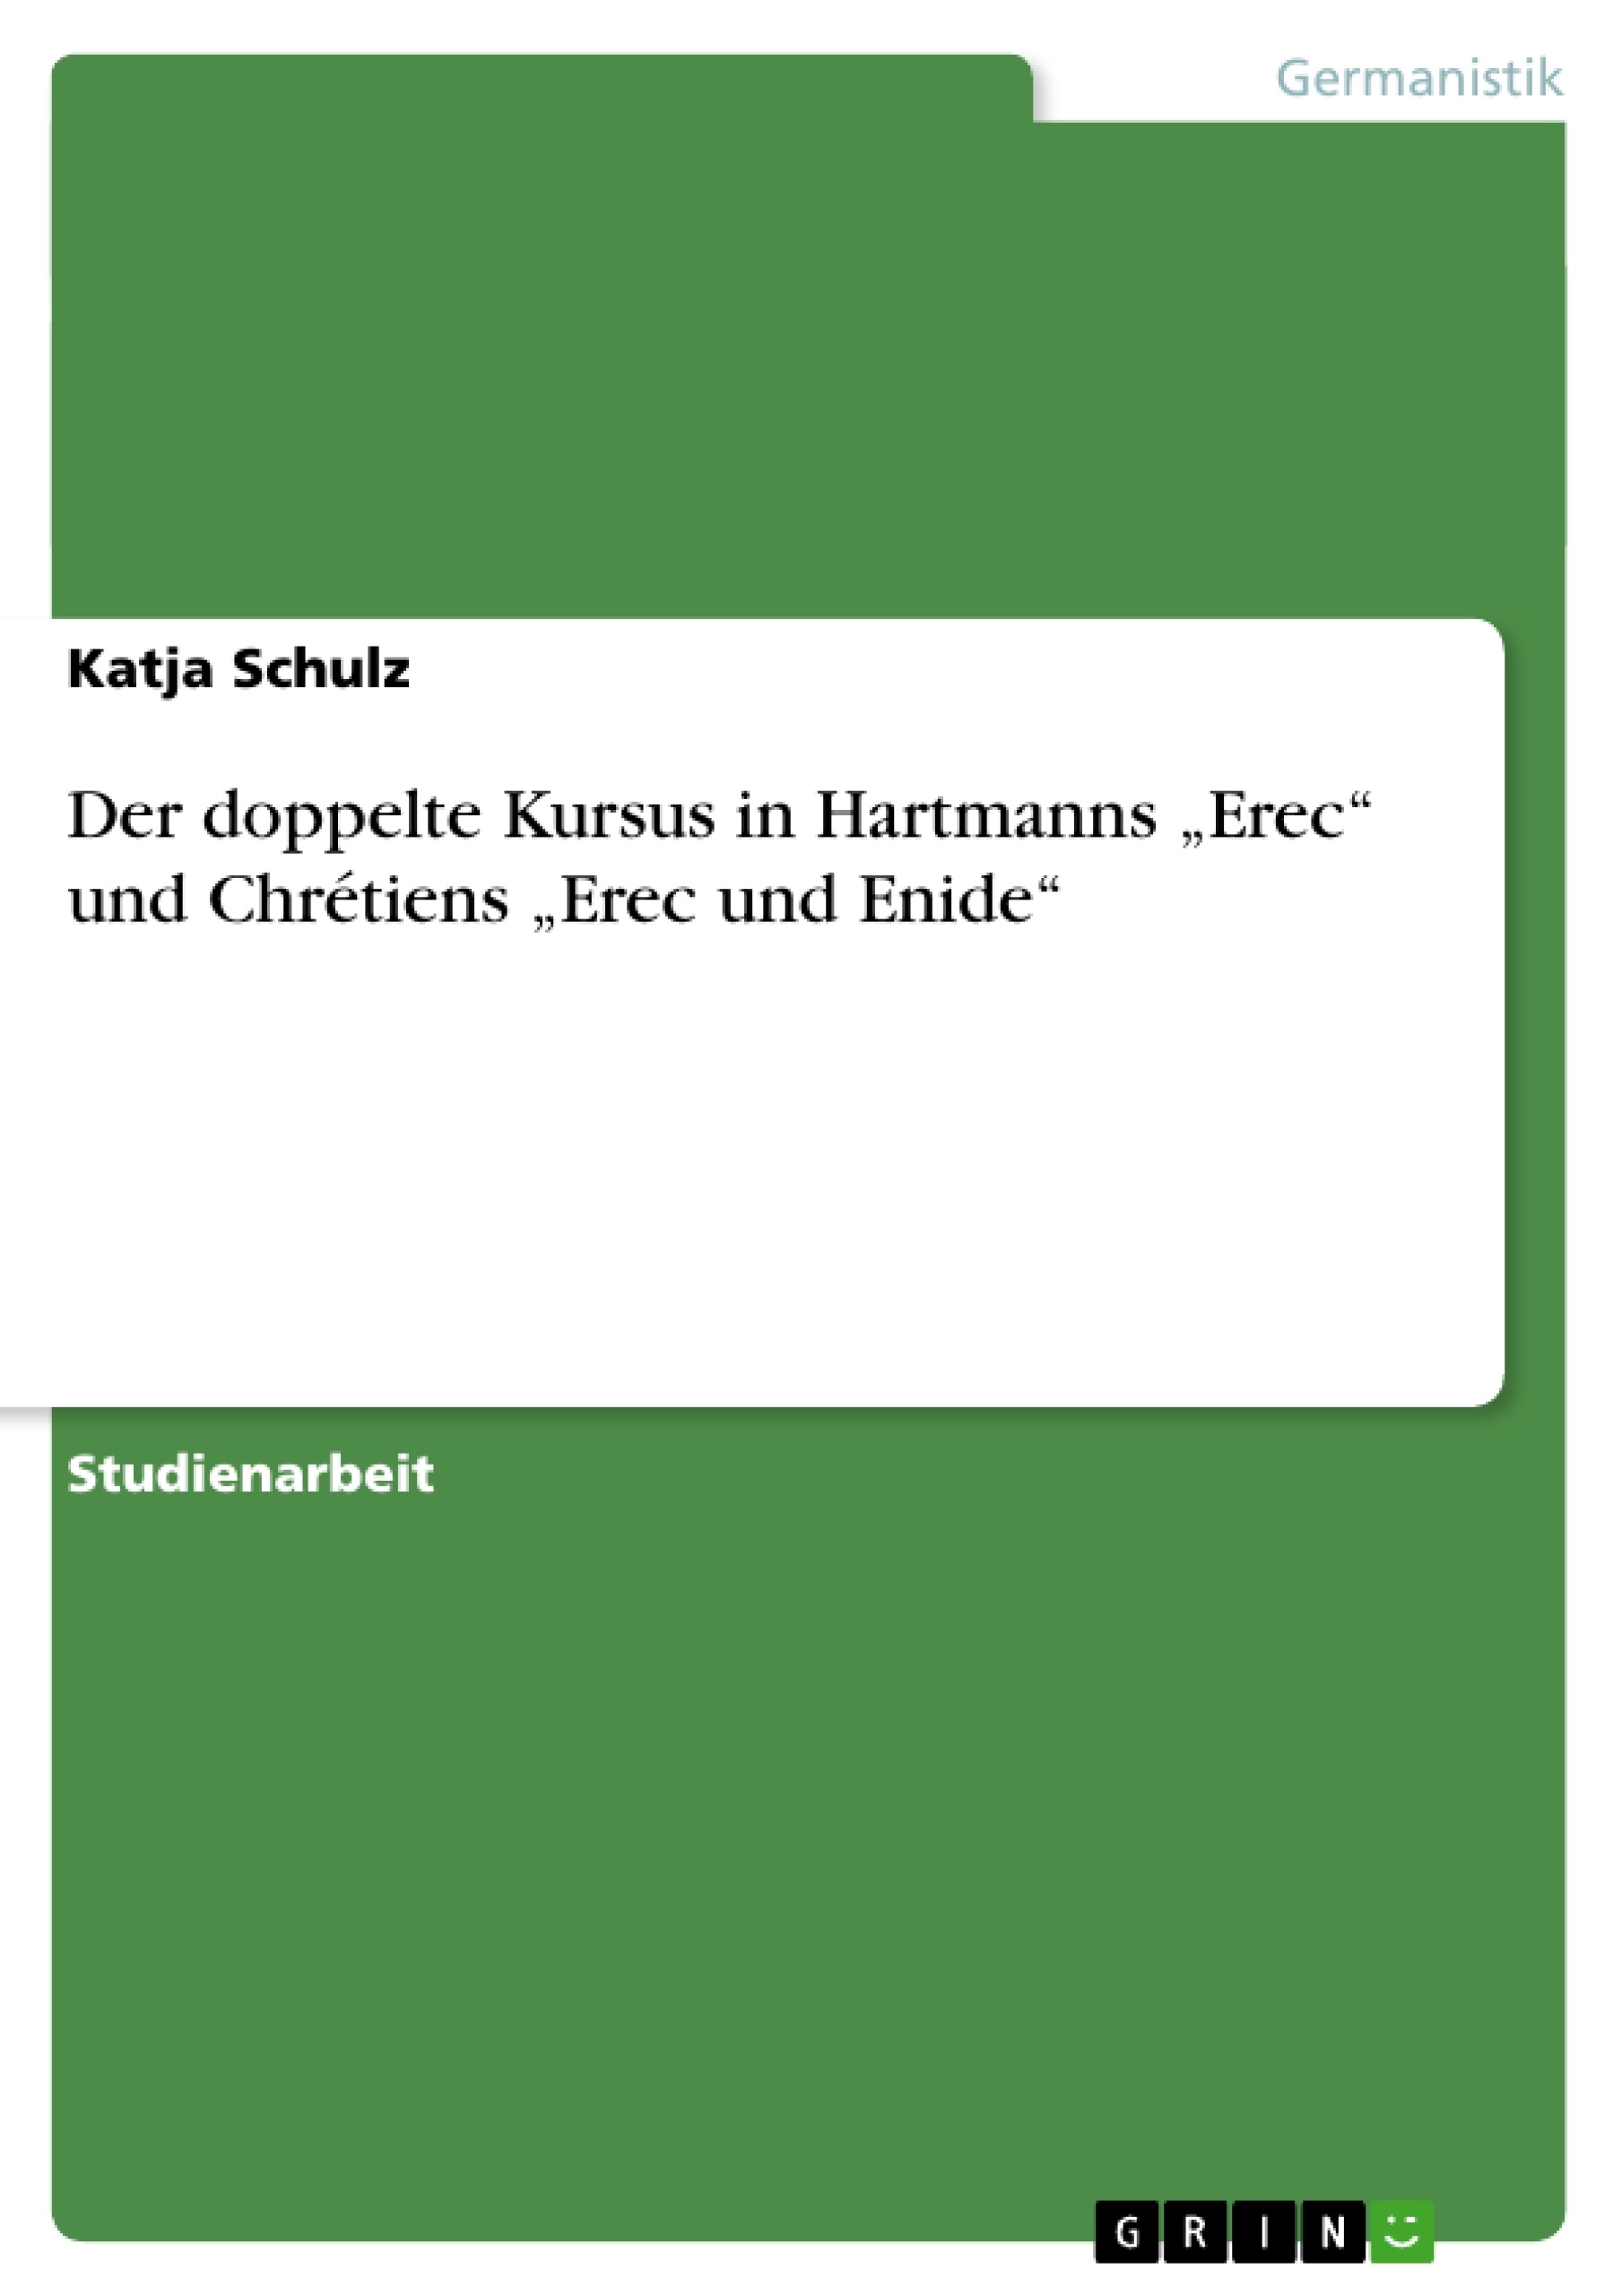 Titre:  Der doppelte Kursus in Hartmanns „Erec“ und Chrétiens „Erec und Enide“